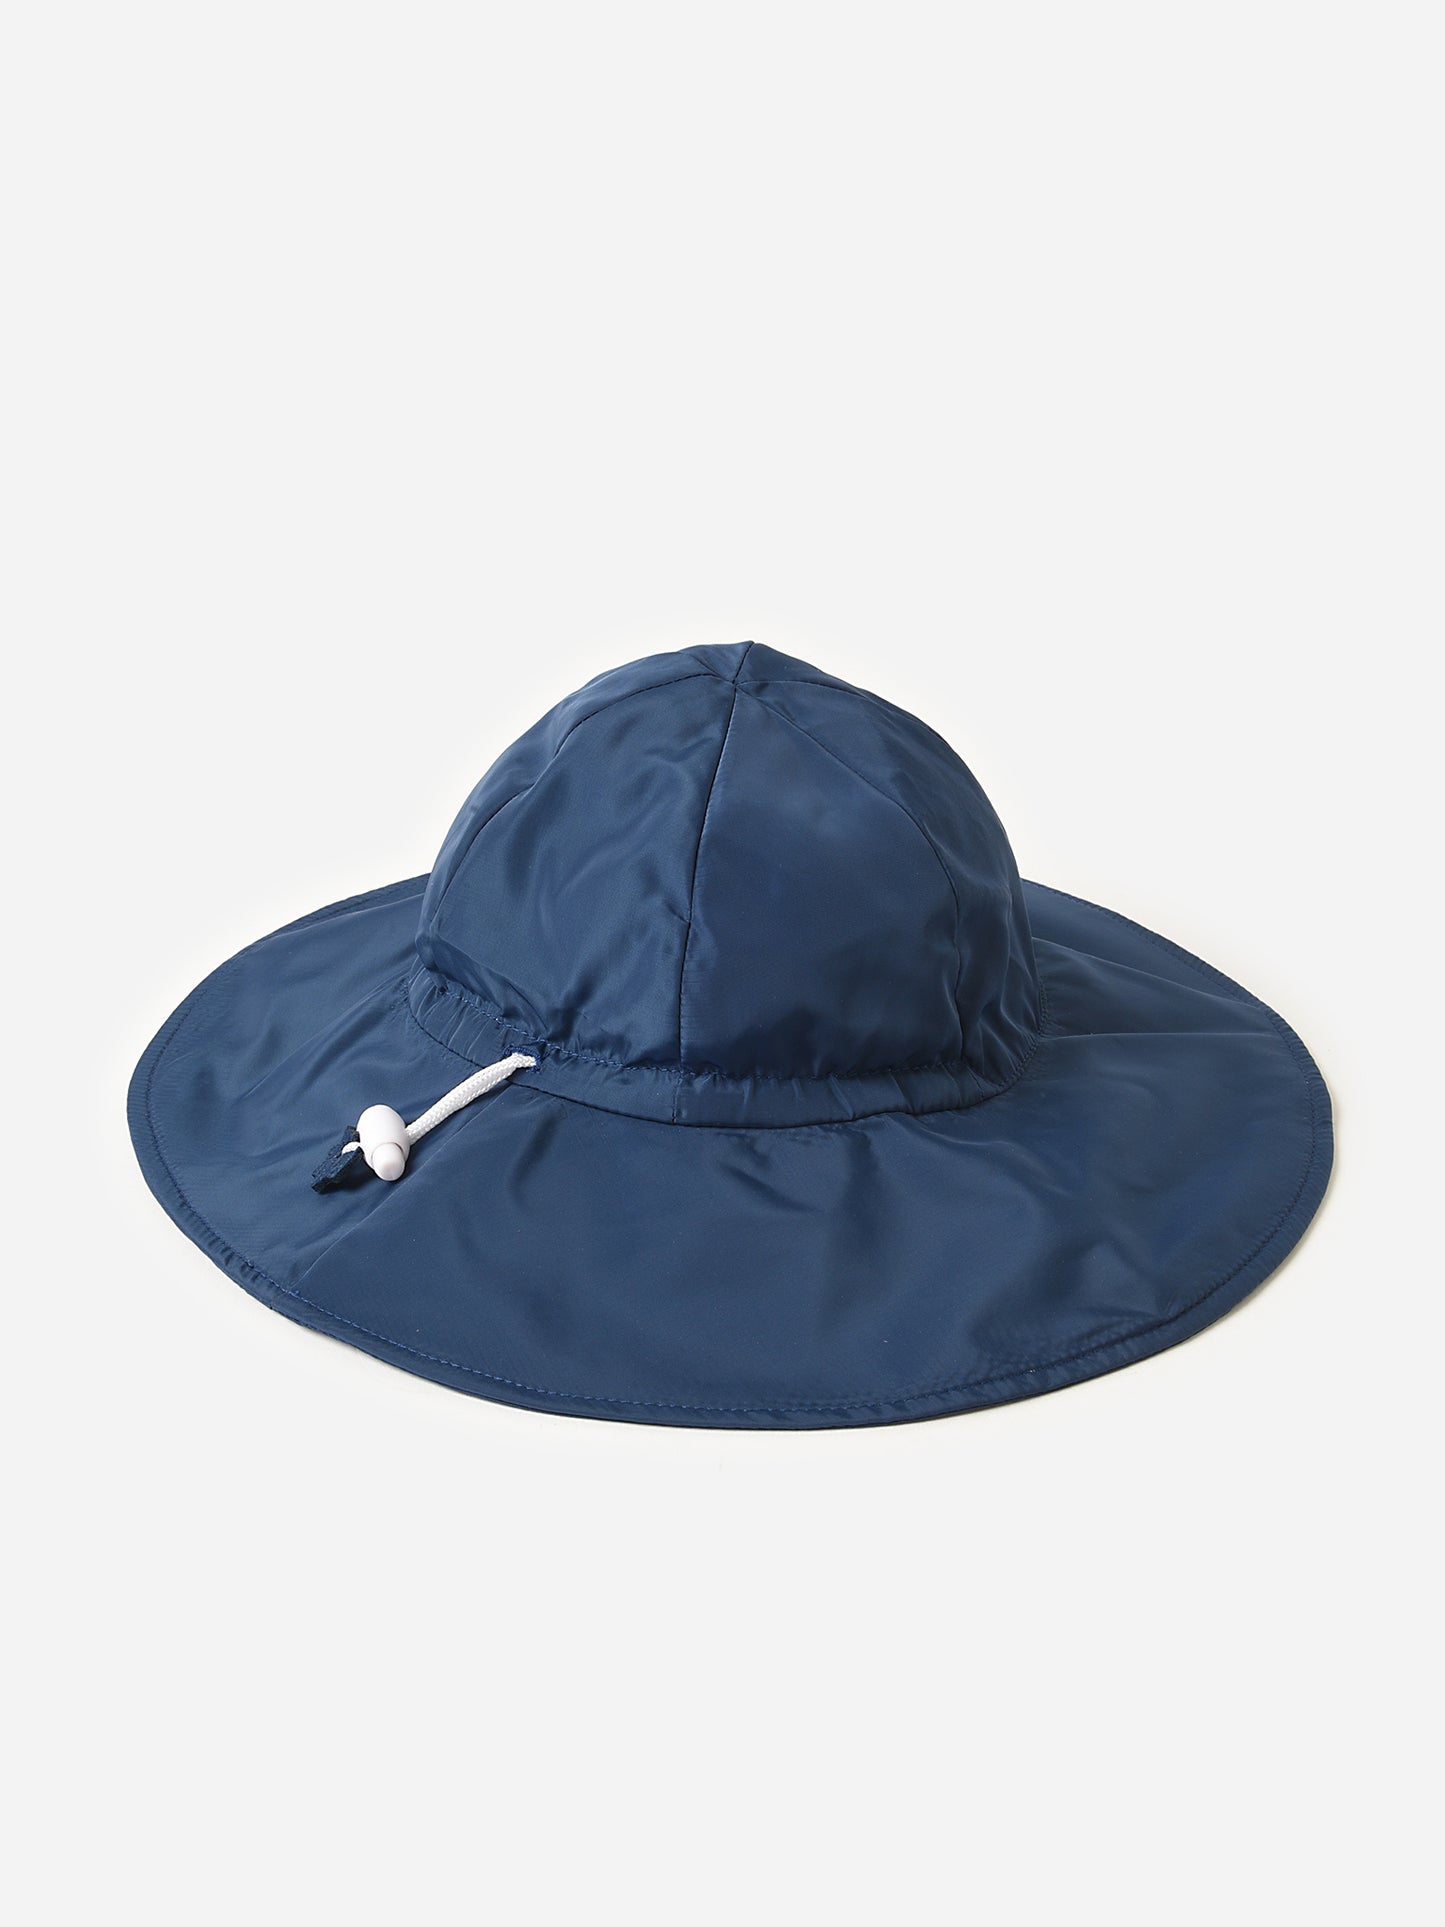 Rufflebutts Baby Sun Protective Hat